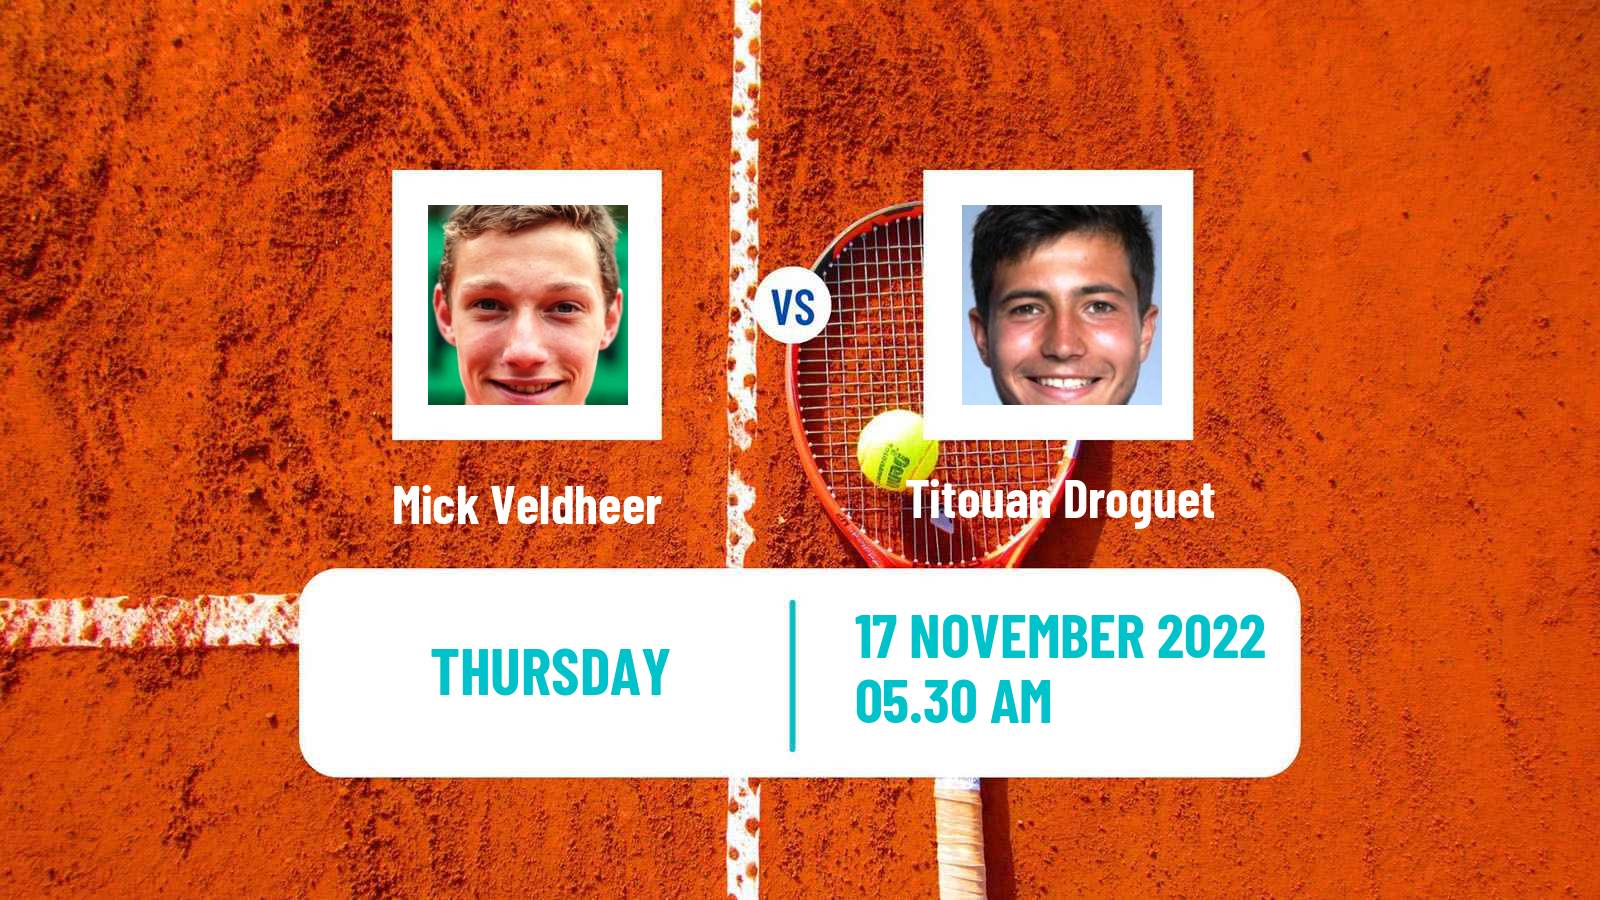 Tennis ITF Tournaments Mick Veldheer - Titouan Droguet